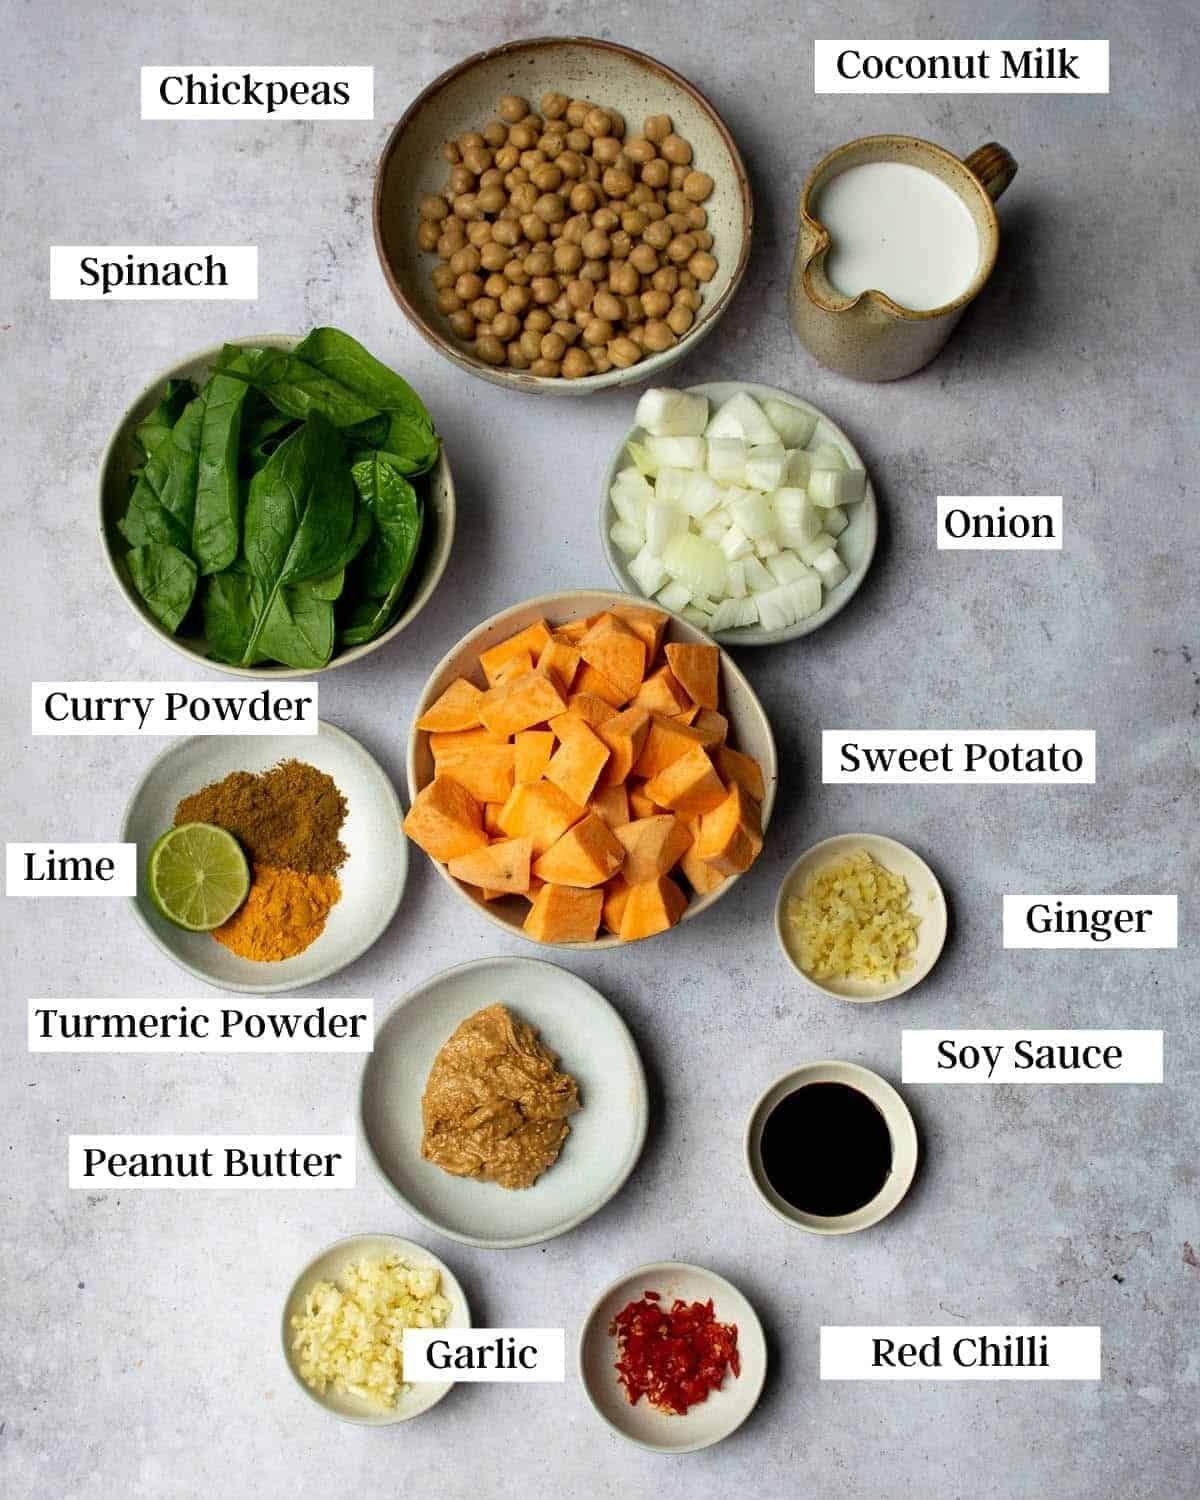 Ingredients in bowls